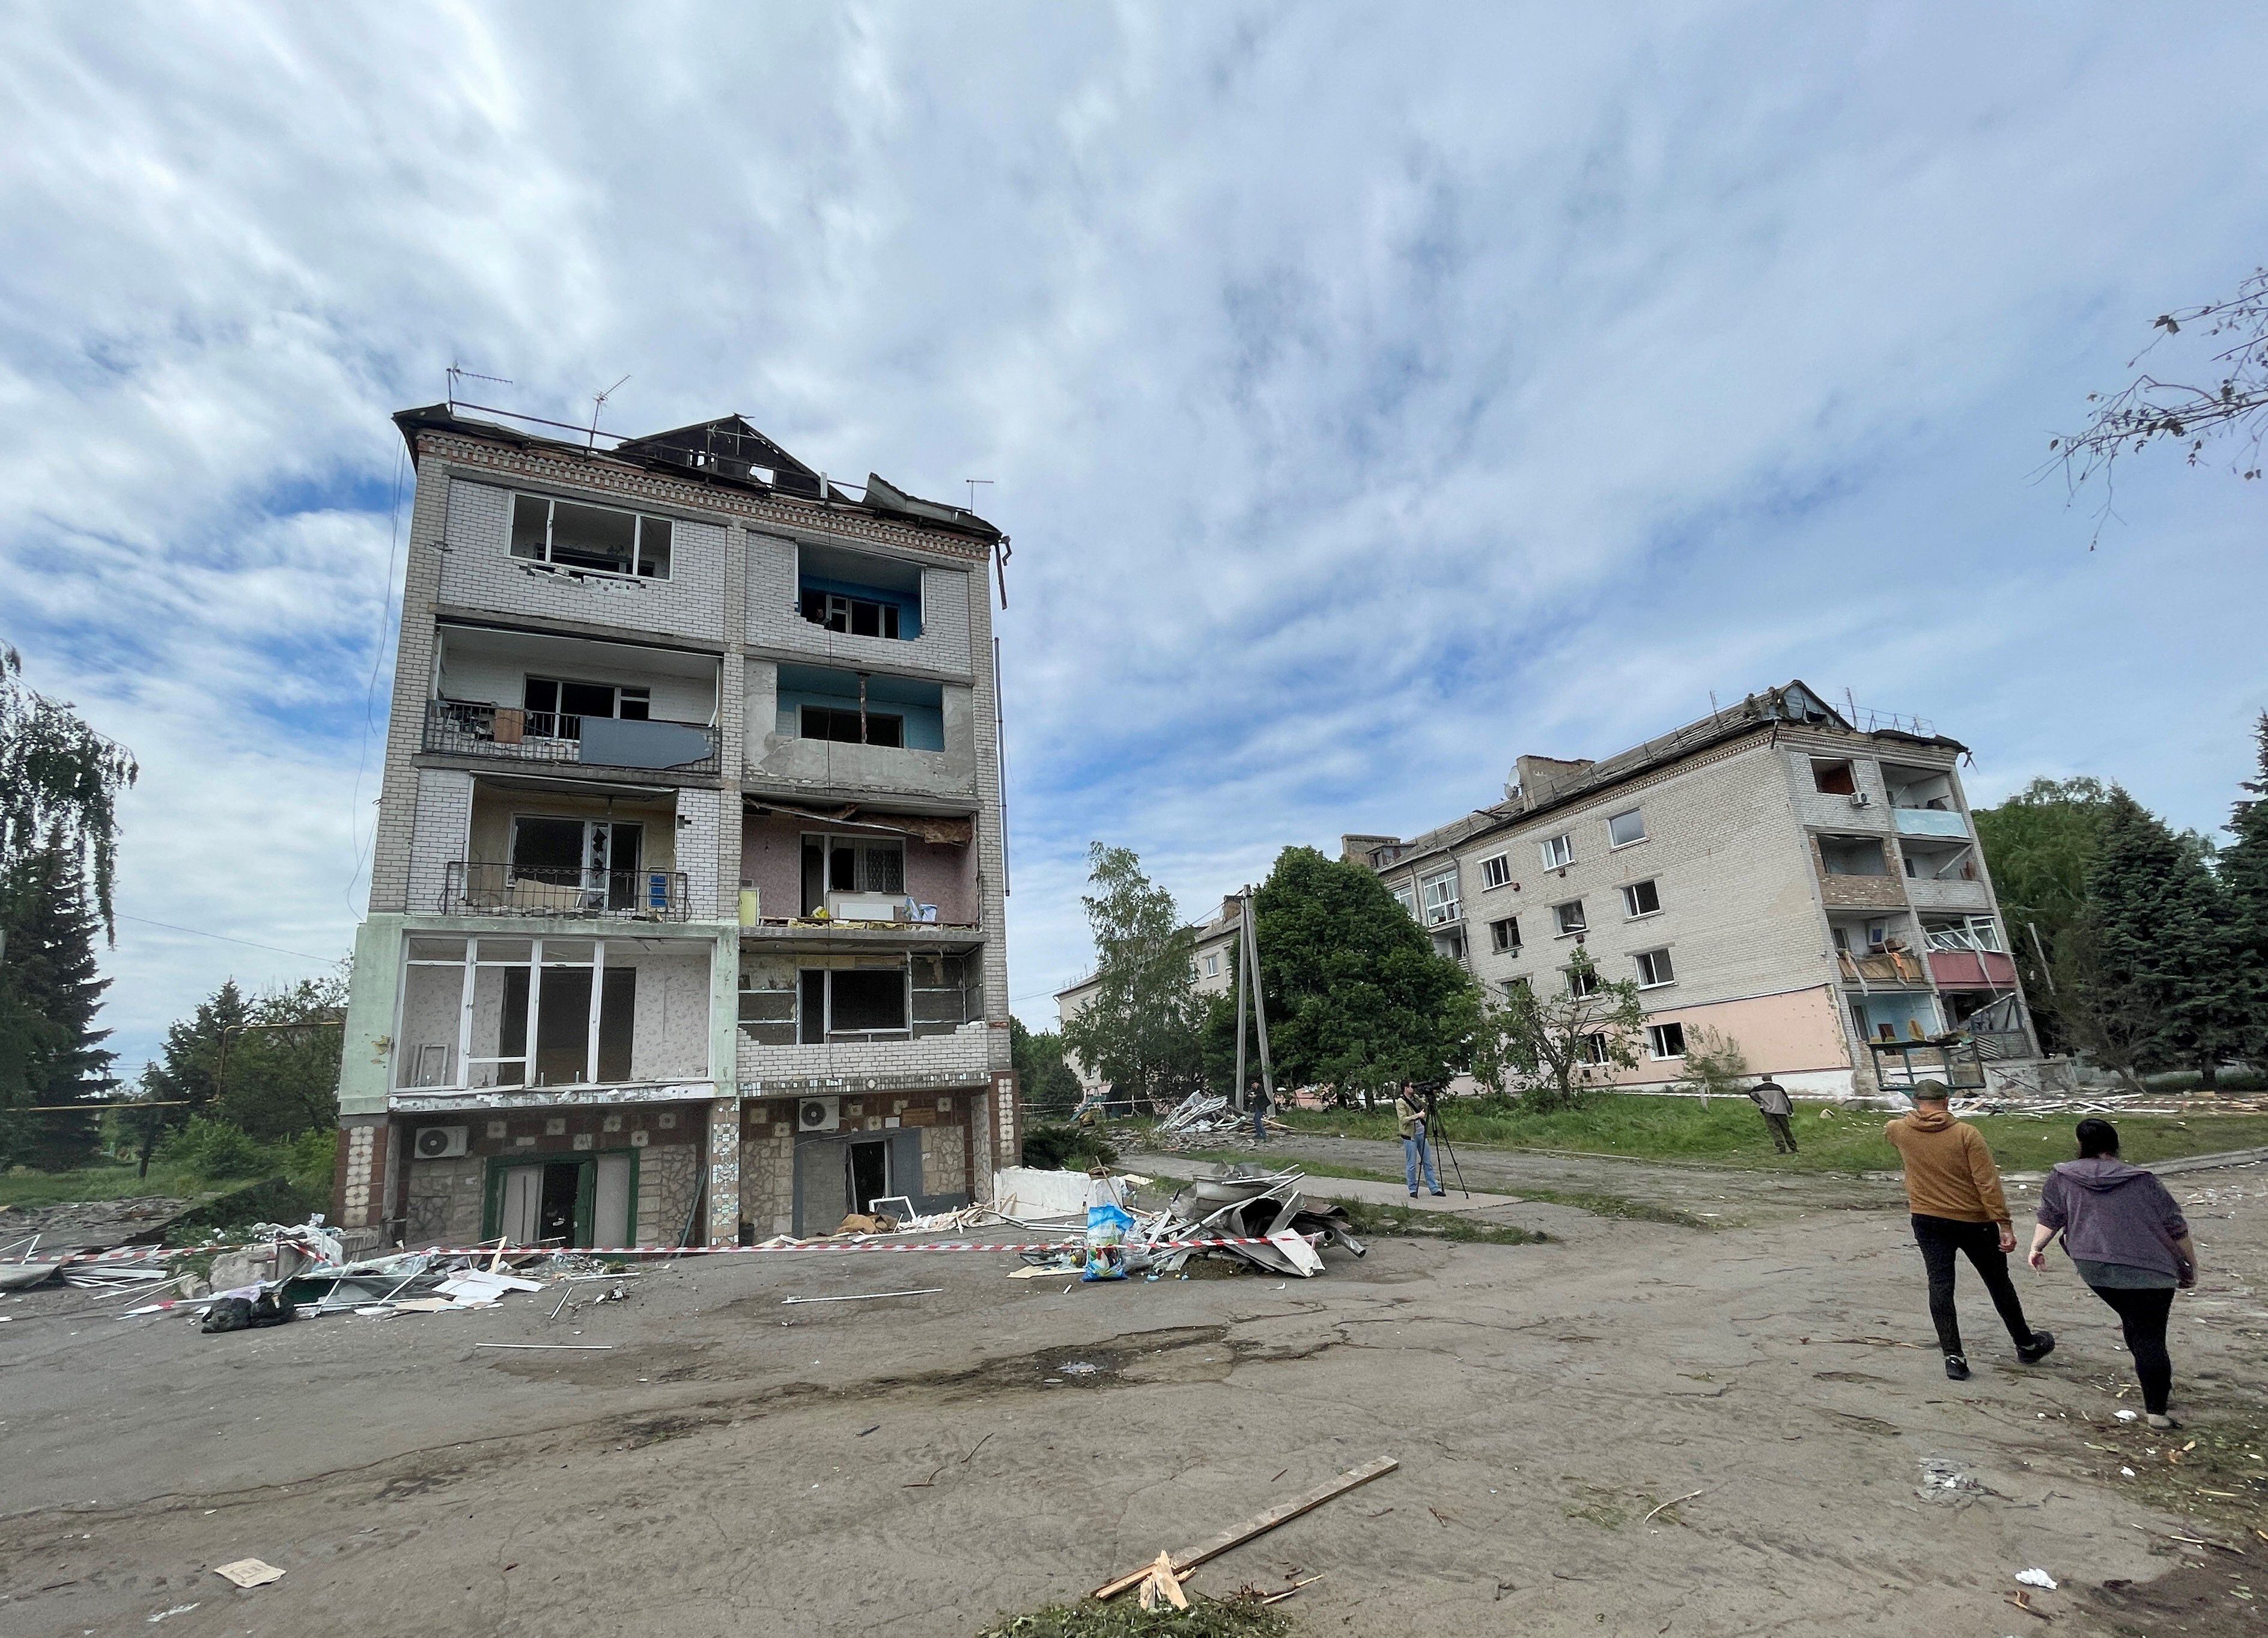 La gente pasa frente a un edificio residencial dañado luego de un ataque ruso en un pequeño pueblo en la región de Dnipropetrovsk.